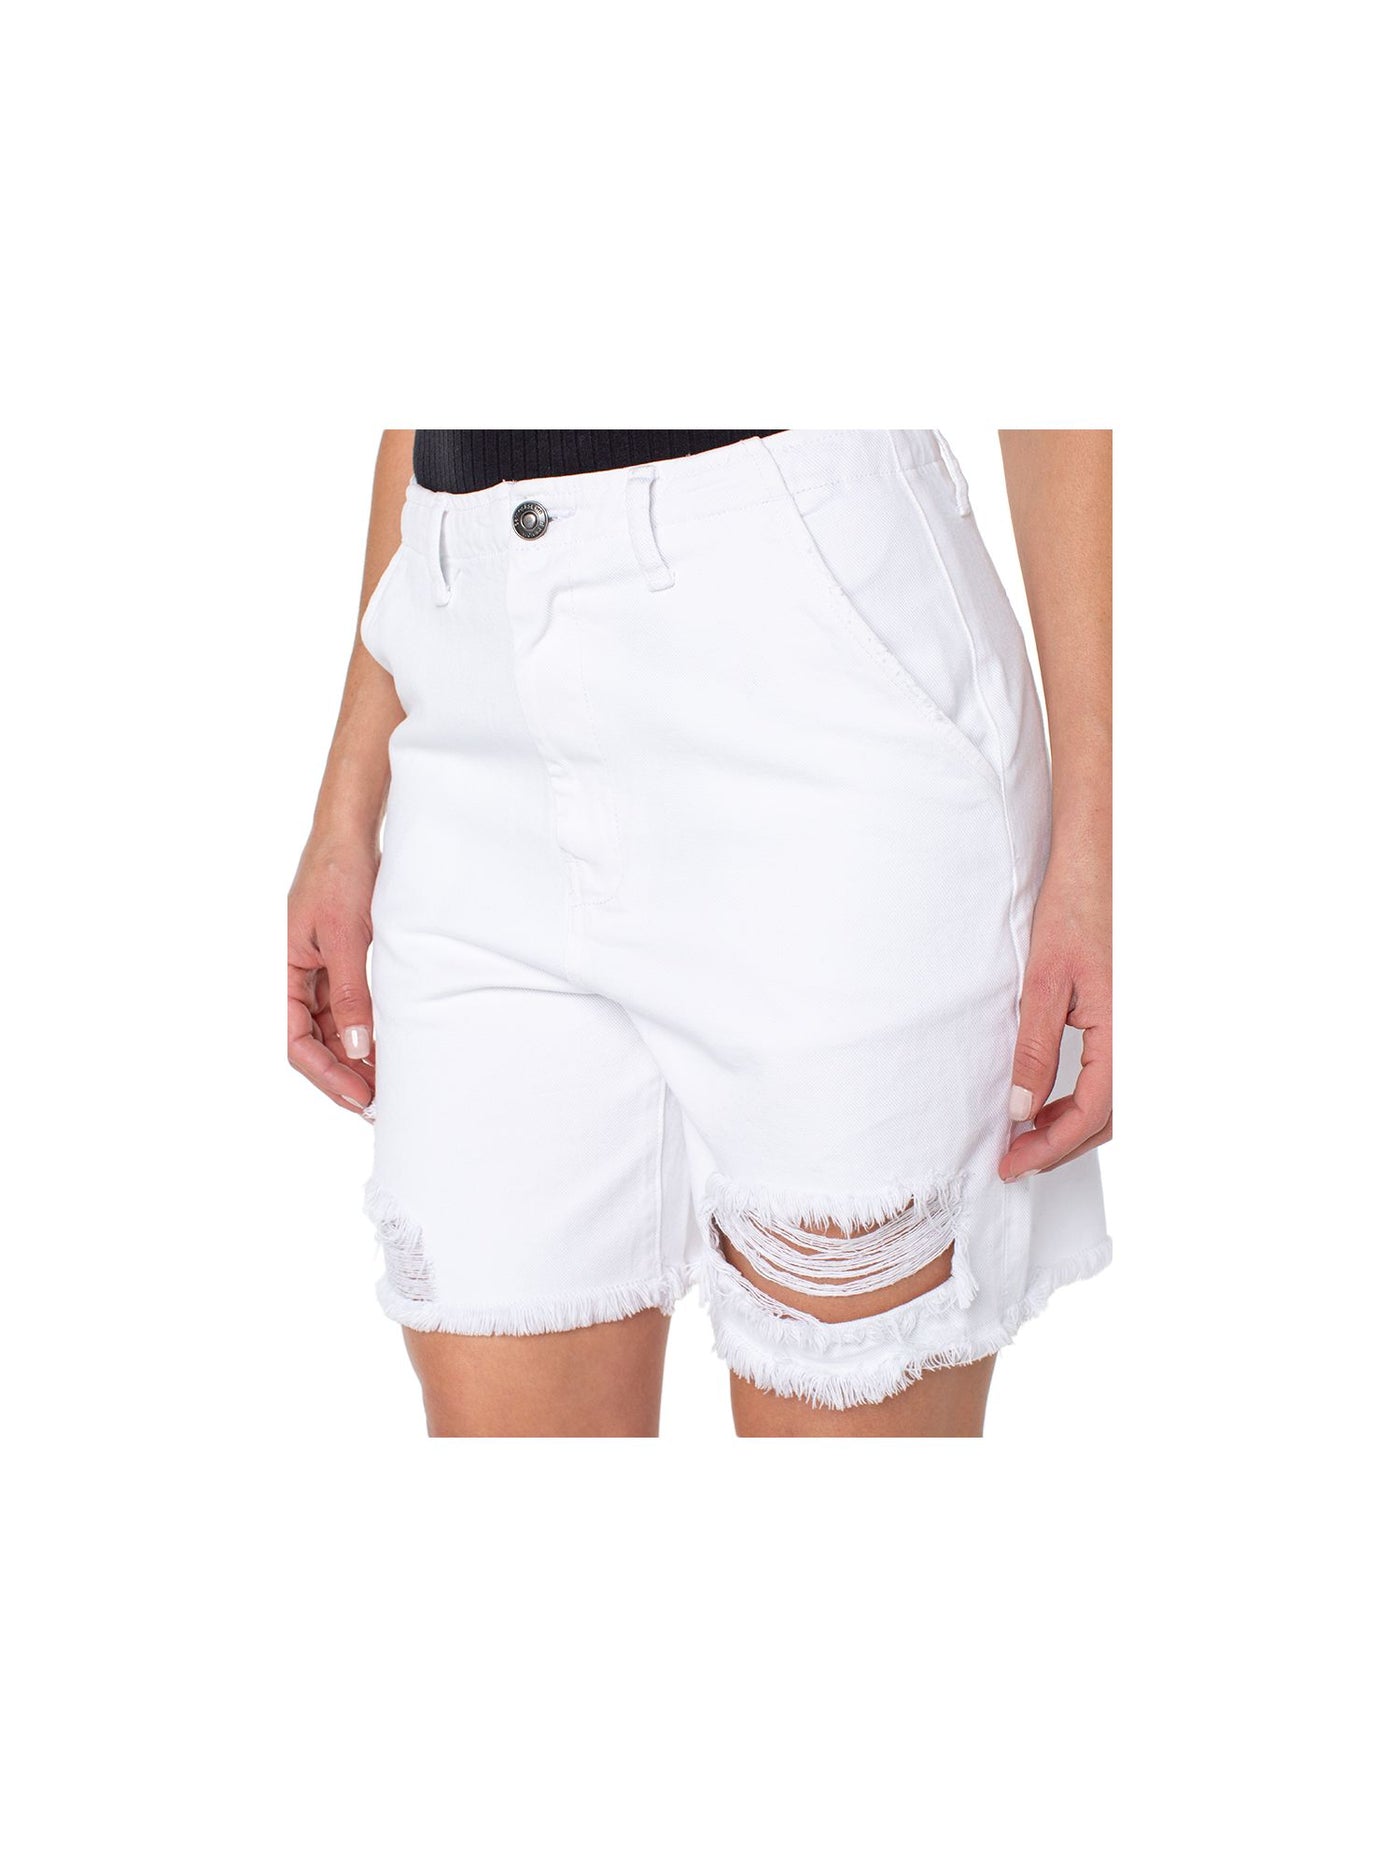 EARNEST SEWN NEW YORK Womens White Zippered Pocketed Frayed Hems High Waist Shorts 30 Waist